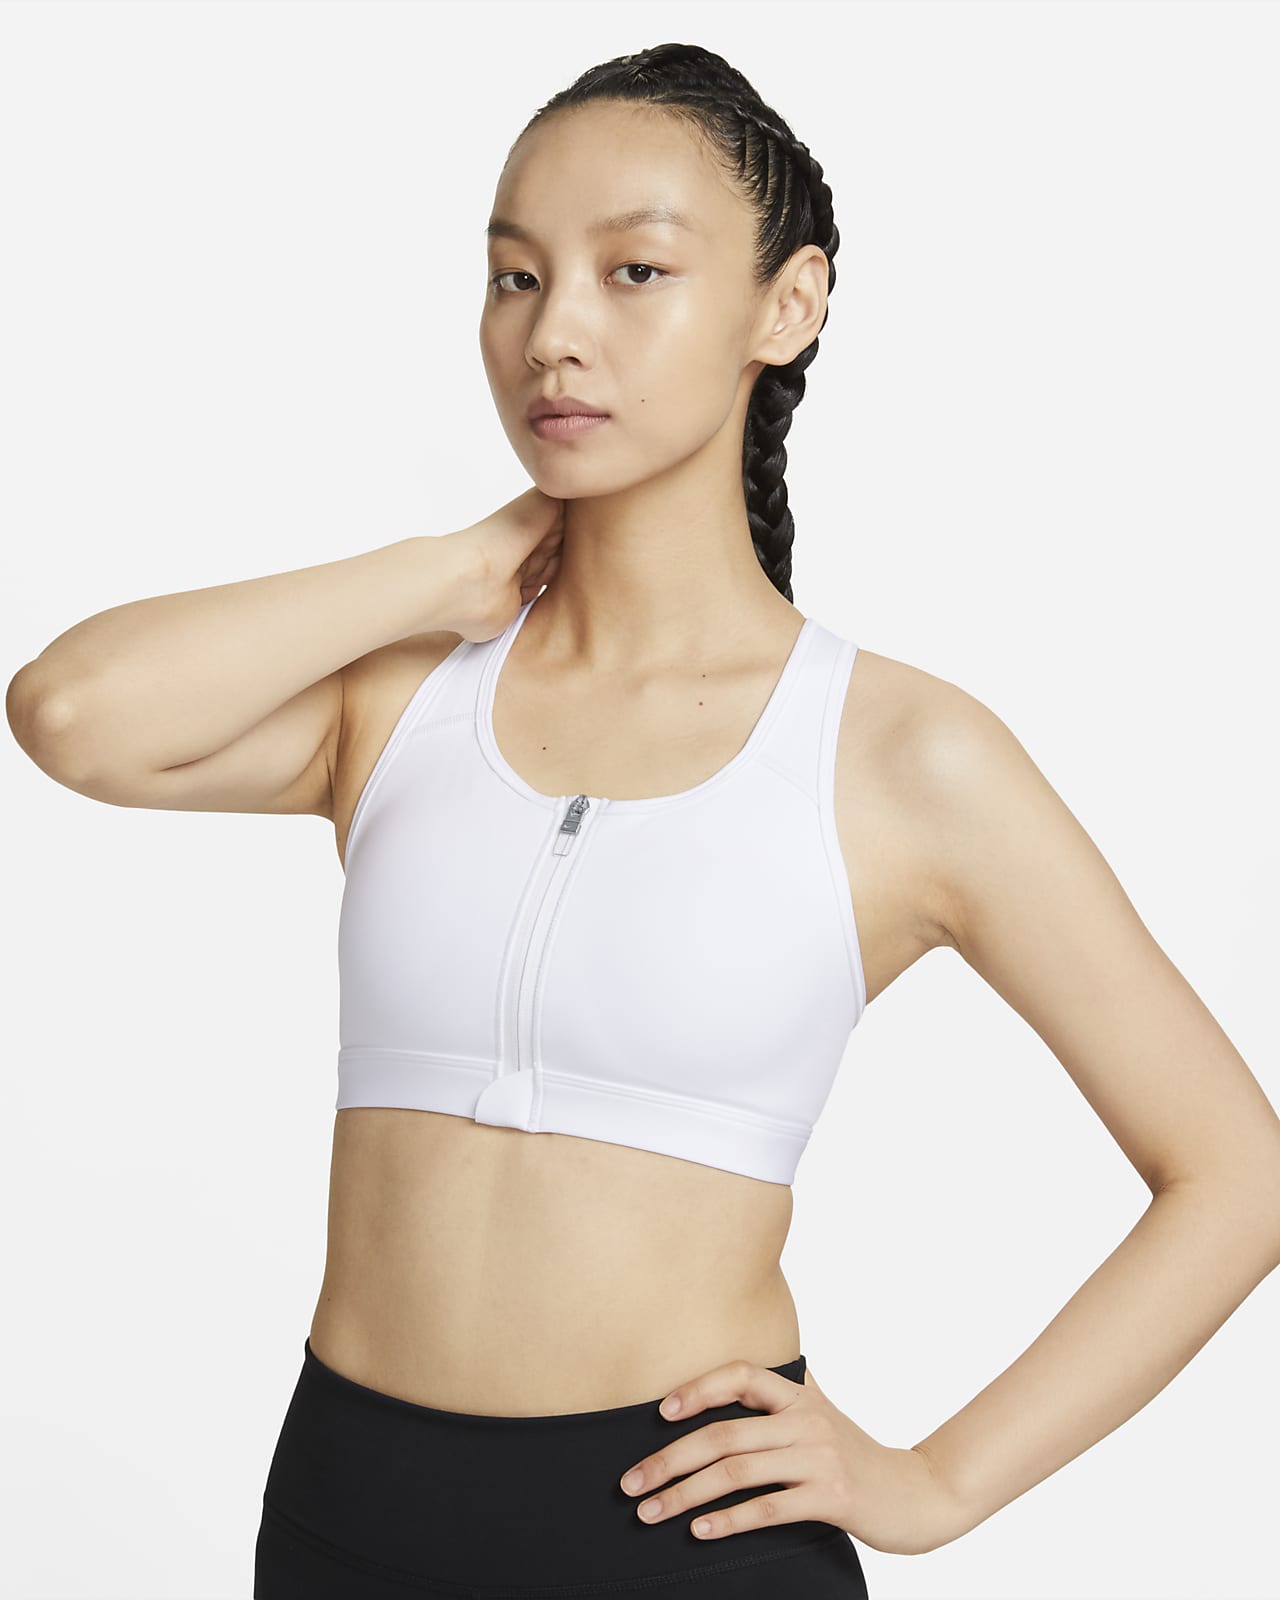 Nike Swoosh 女子中强度支撑速干衬垫前拉链运动内衣